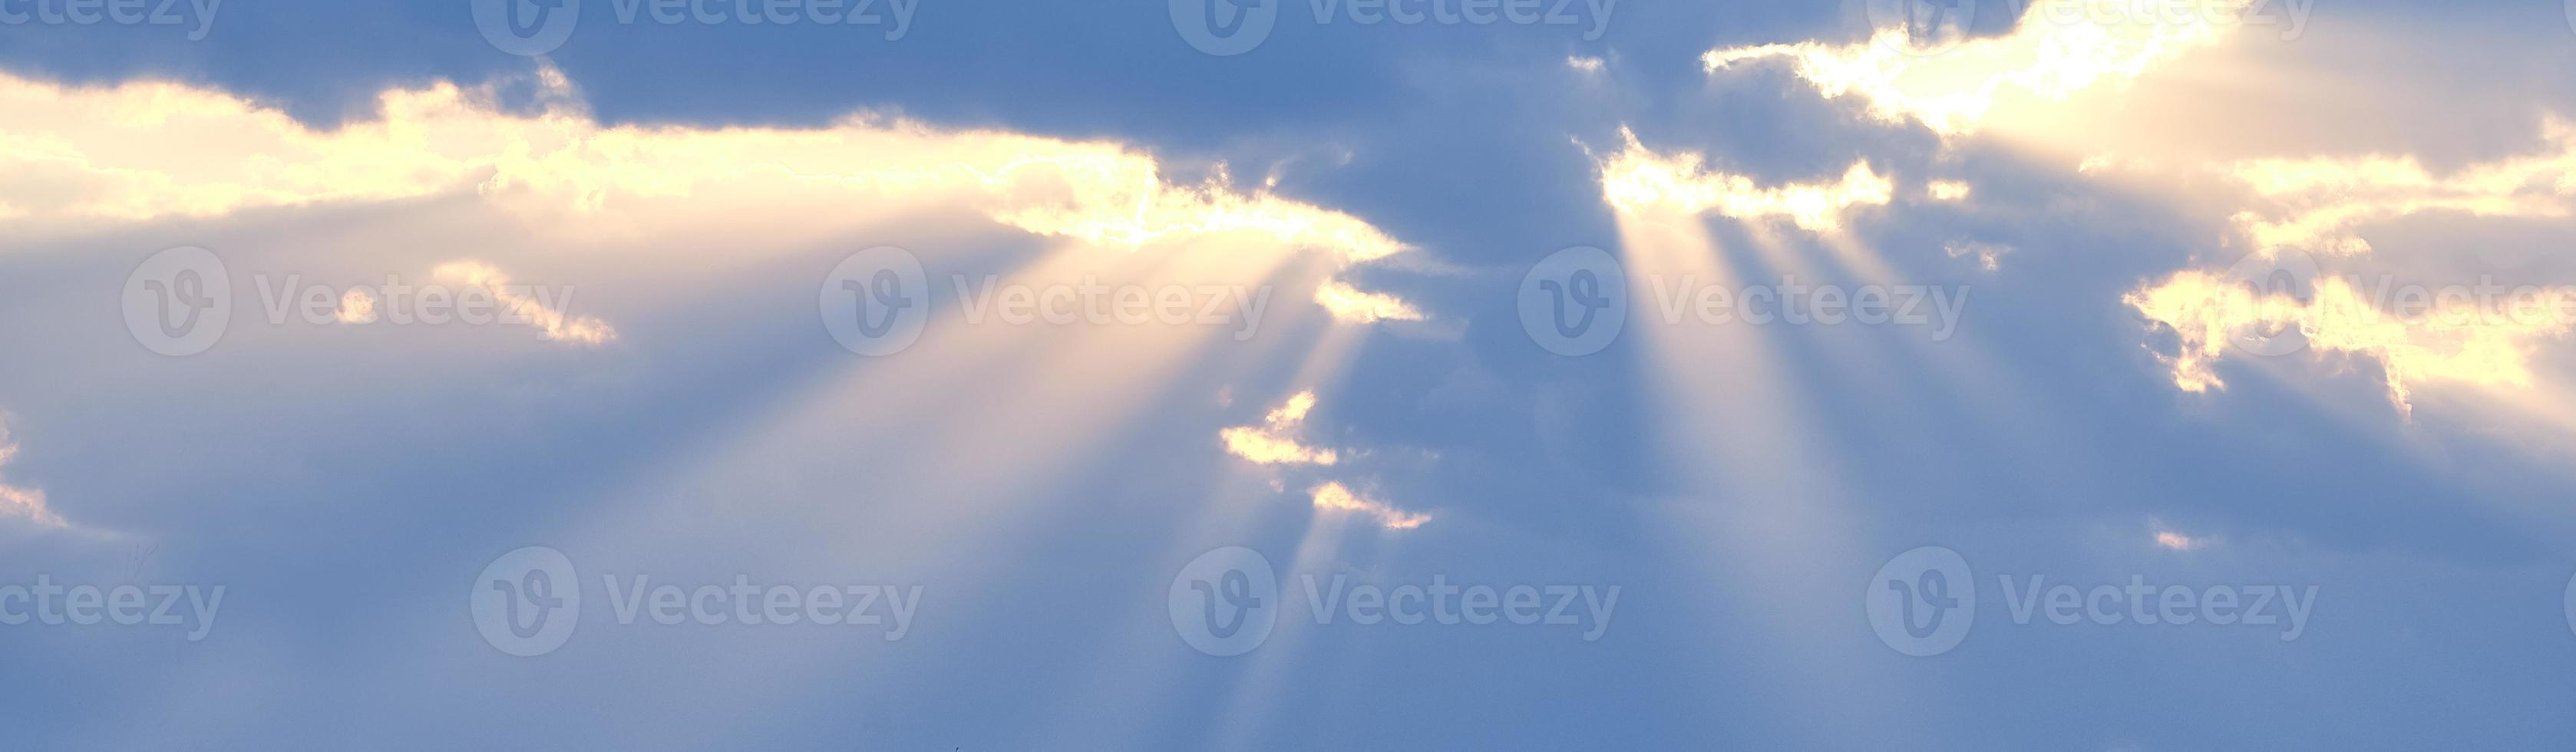 de zonnestralen breken door de blauwe wolken. de achtergrond van de hemel. foto